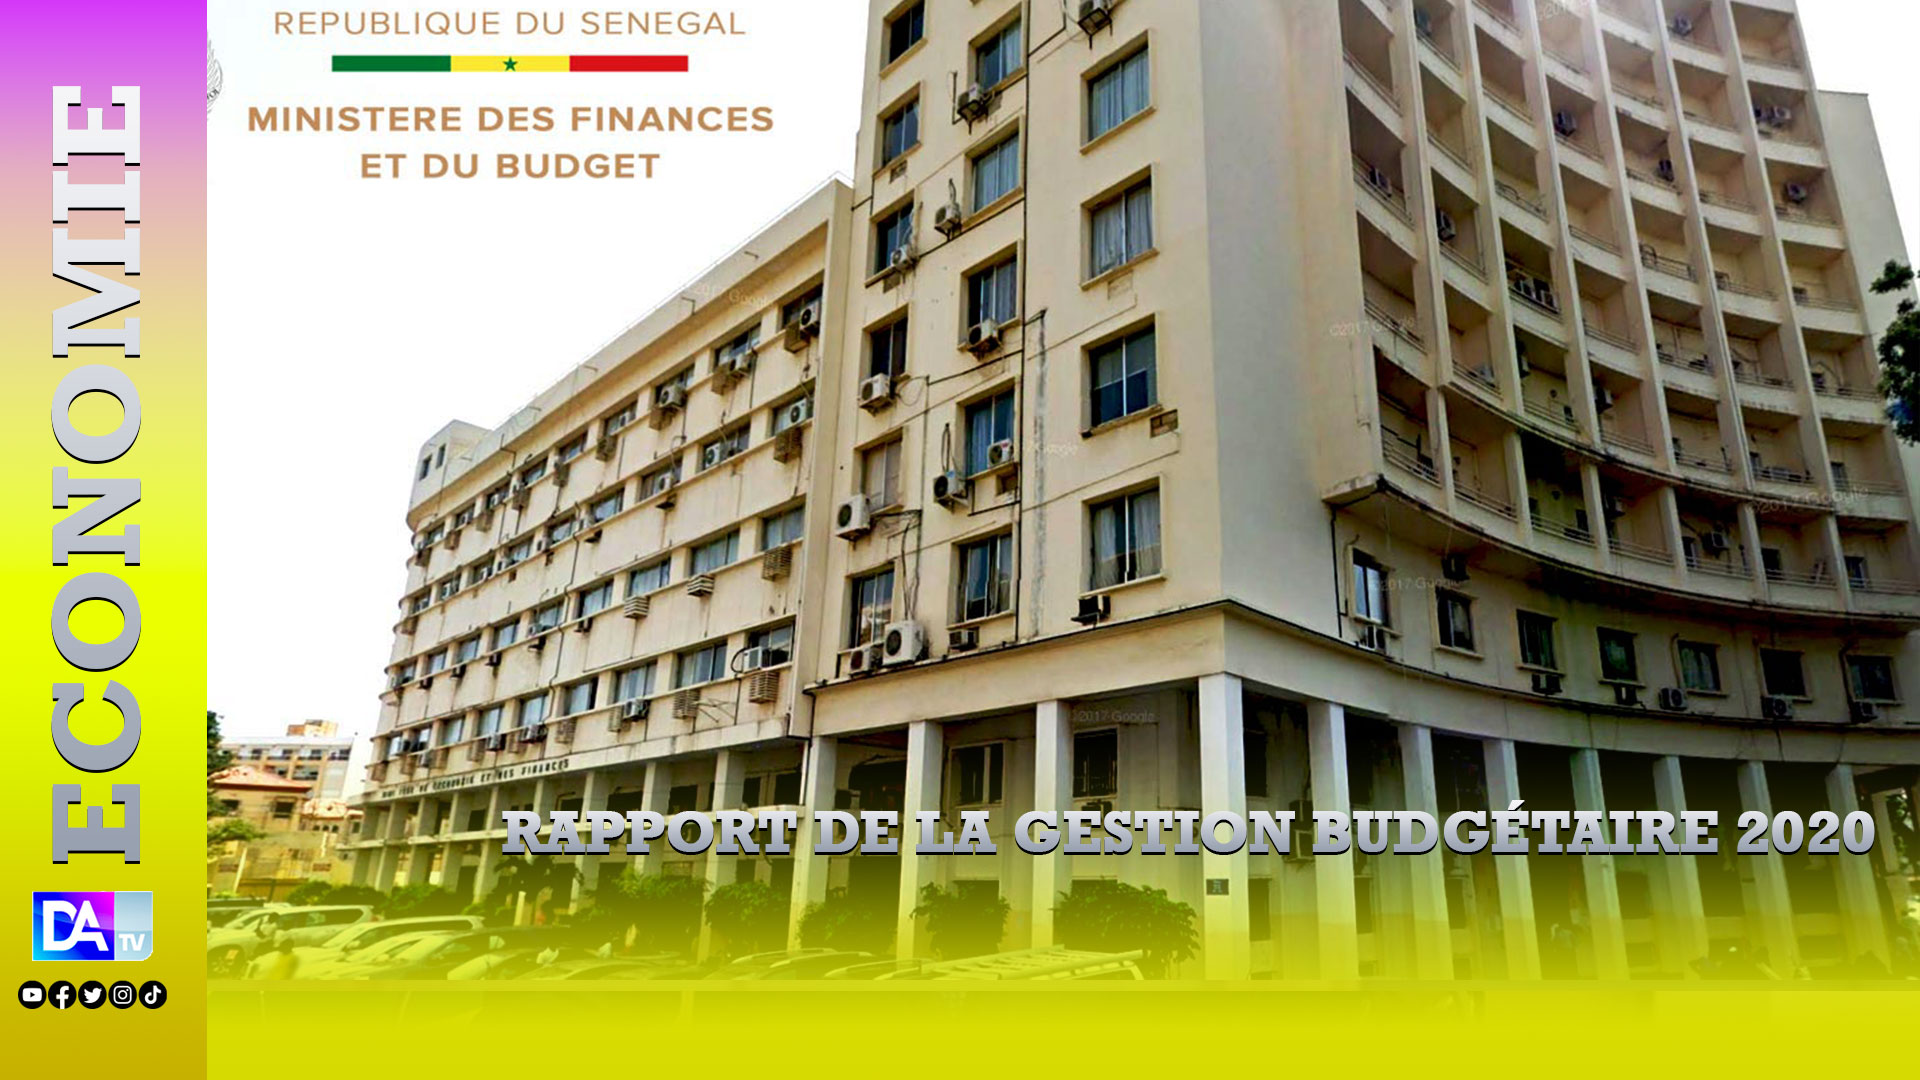 Rapport de la Gestion budgétaire 2020: le pilier dominant du fonds FORCE Covid-19 engrange près de 425 milliards FCFA, 15,39 milliards FCFA exclus de l’audit.